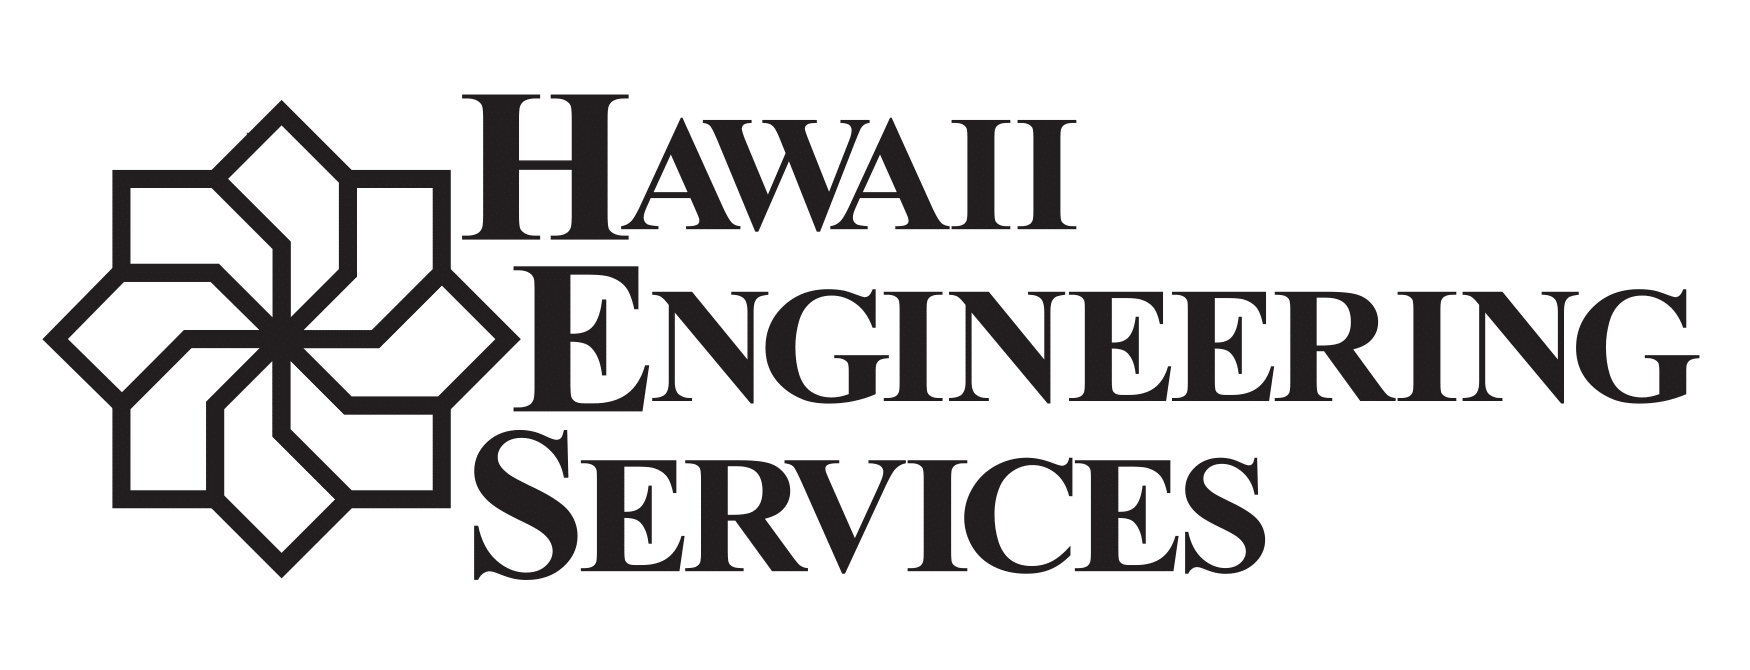 Hawaii Engineering Services, Inc 